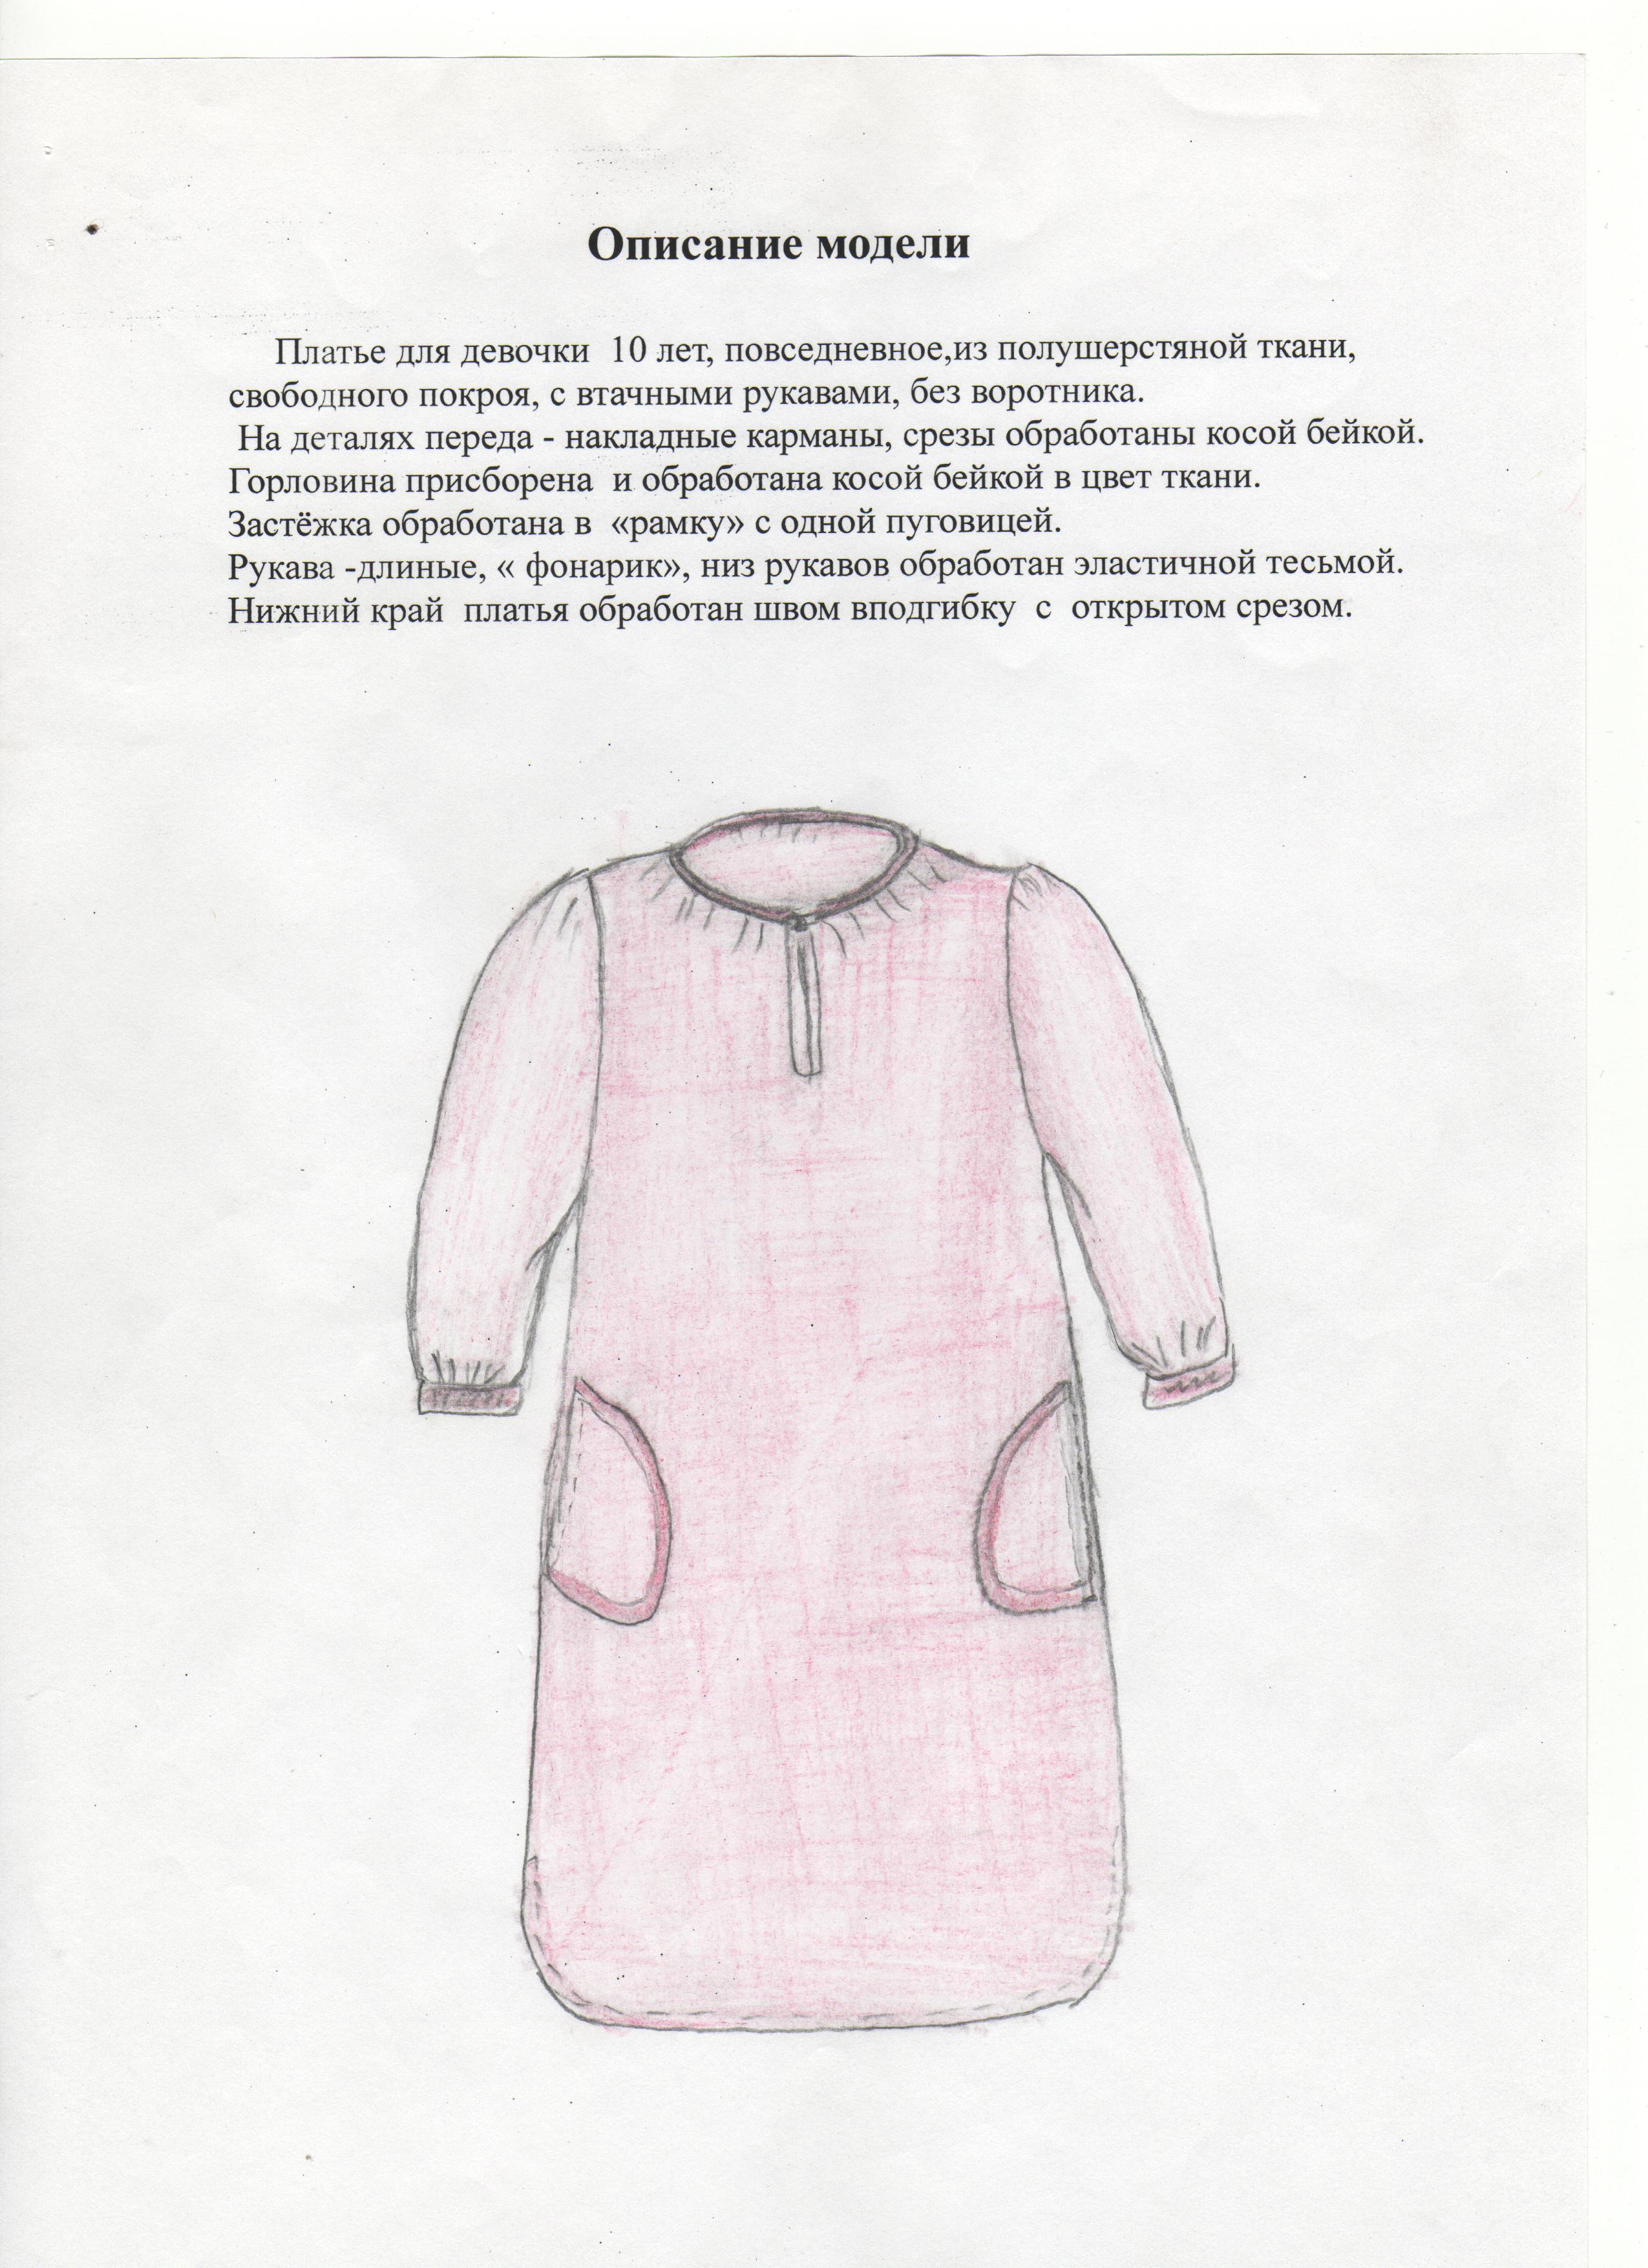 Описание модели платья для девочки